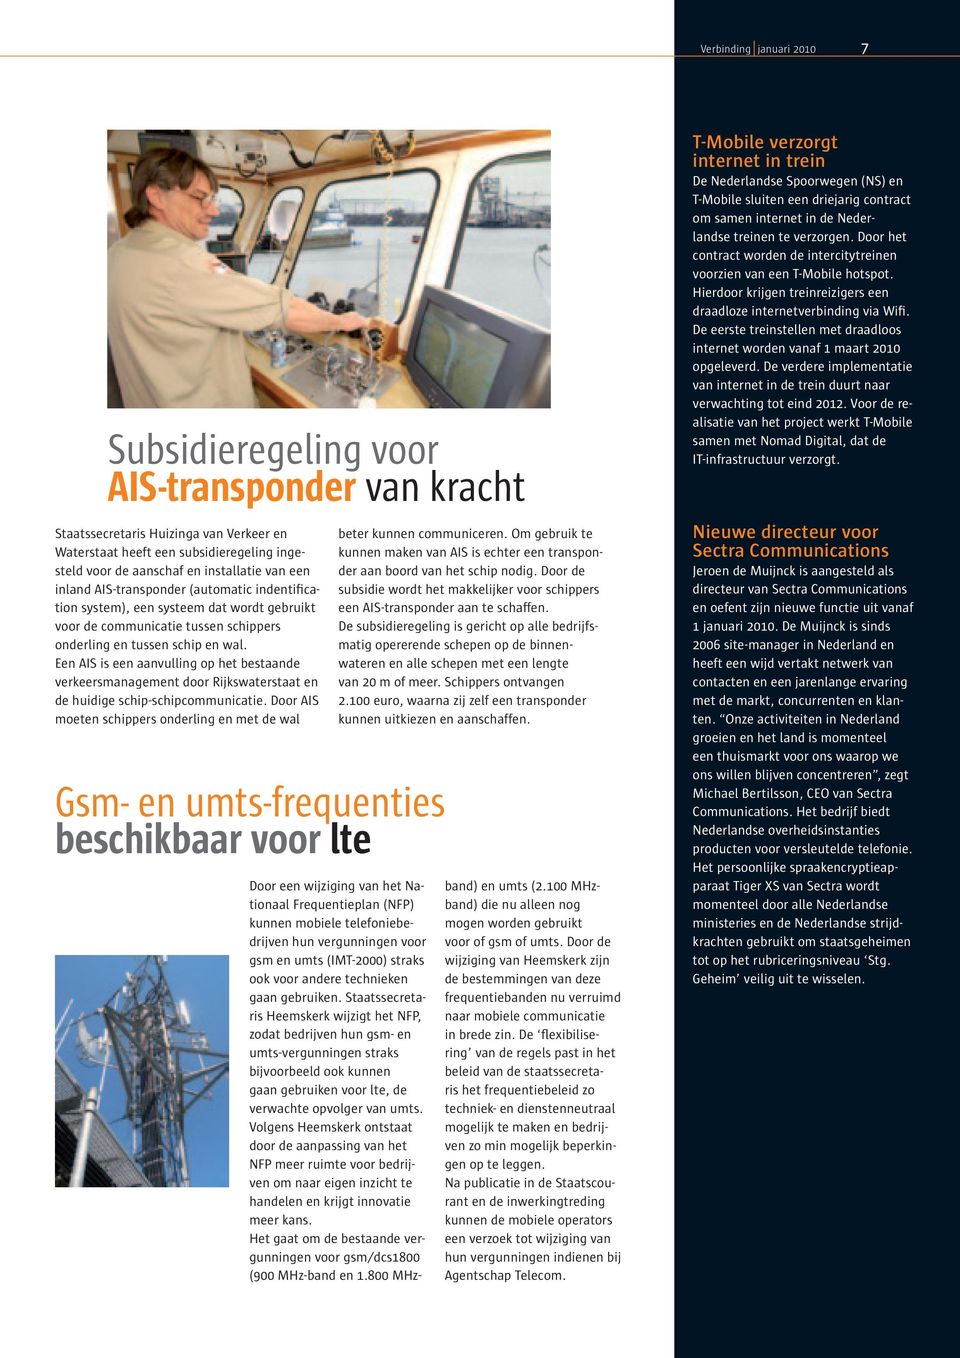 Een AIS is een aanvulling op het bestaande verkeersmanagement door Rijkswaterstaat en de huidige schip-schipcommunicatie.